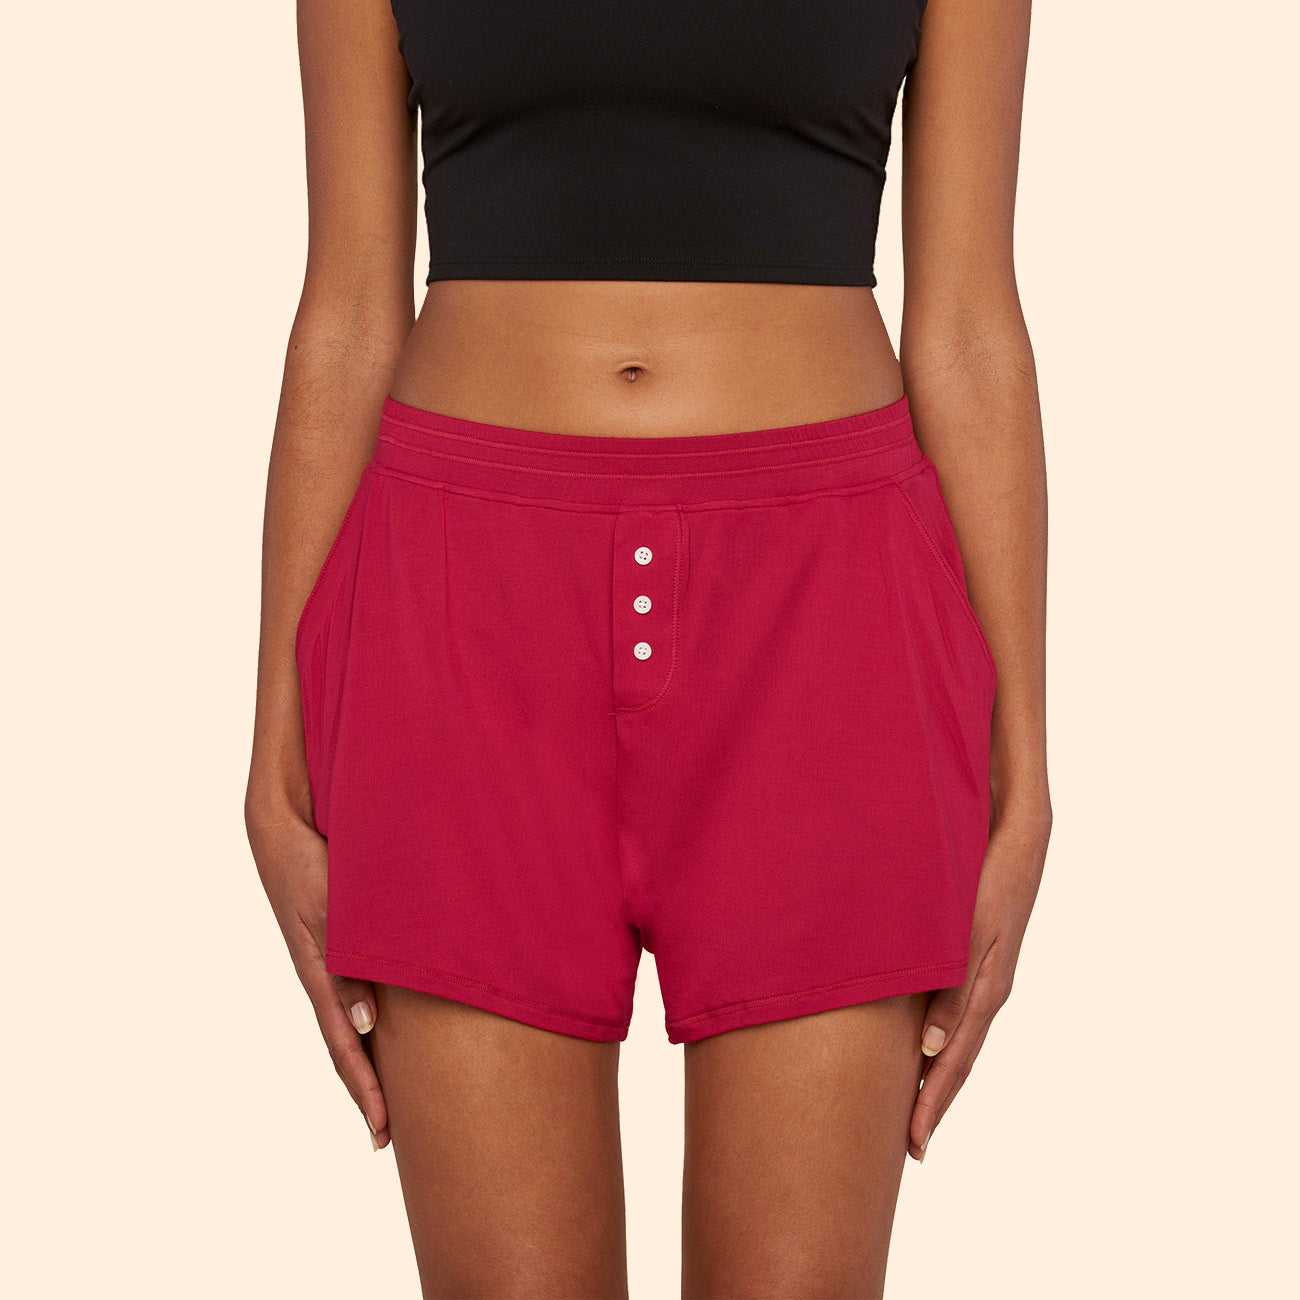 Thinx Sleep Shorts Period Underwear - Spicy In Sizes XXS-4X Undies